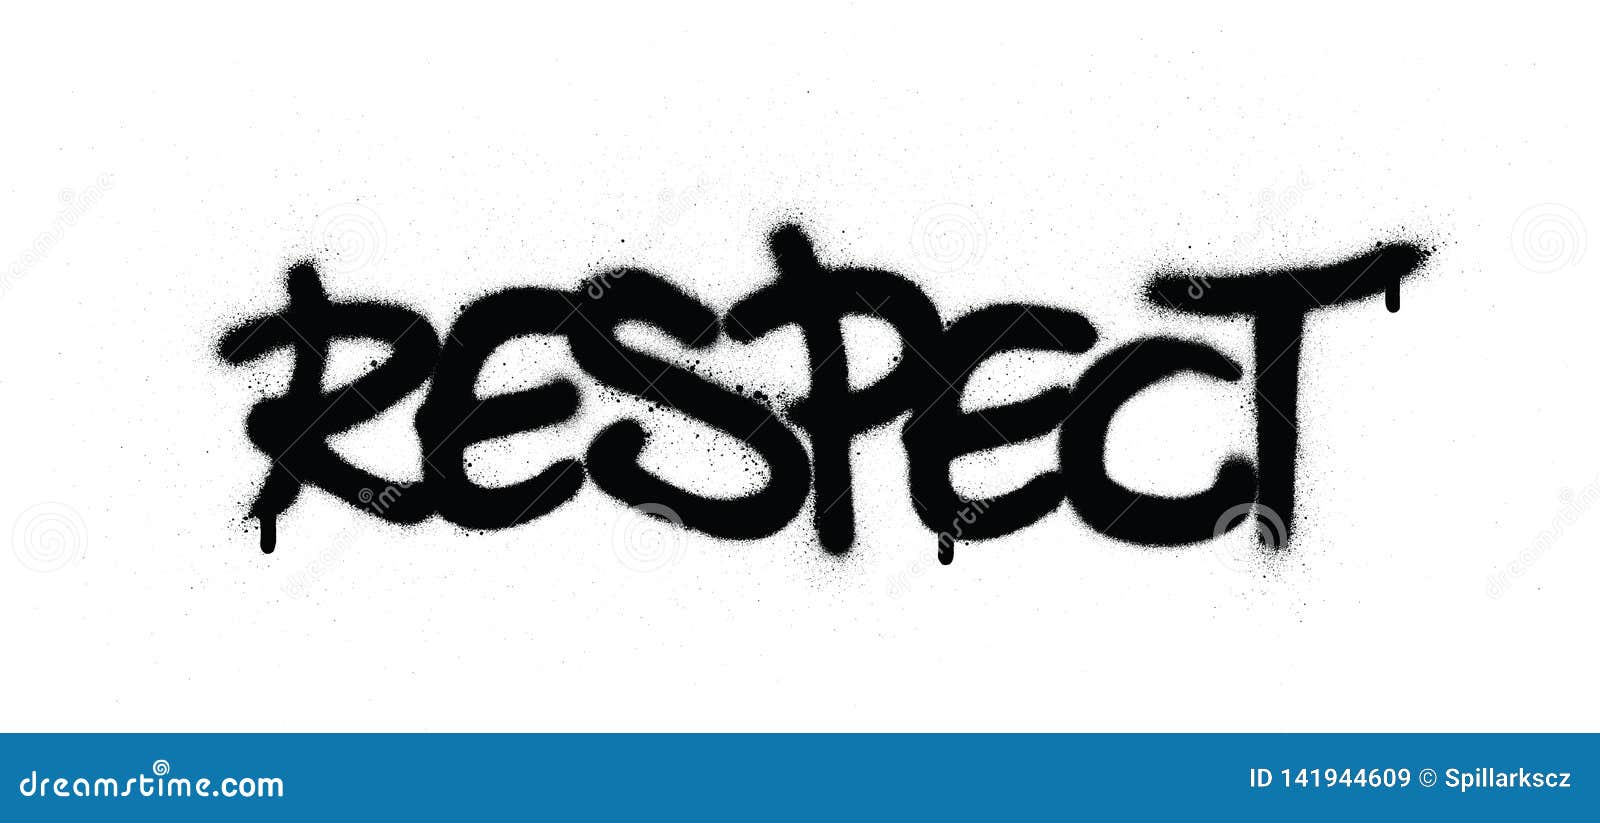 graffiti respect word sprayed in black over white